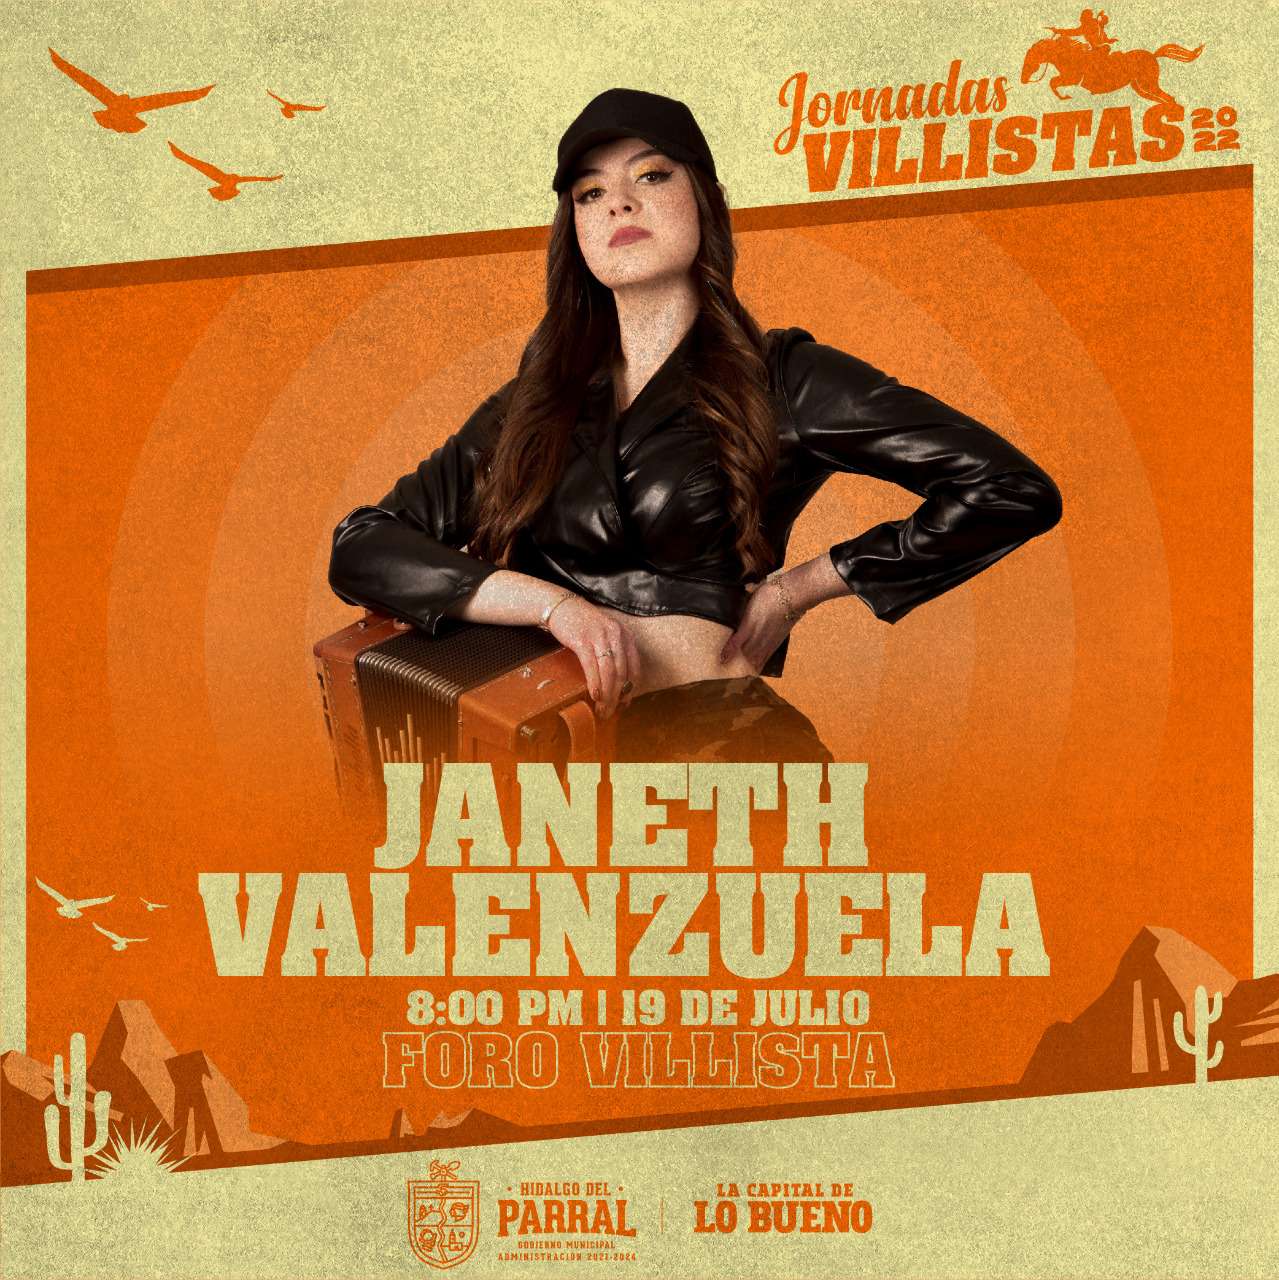 Janeth Valenzuela estará en las jornadas villistas 2022 el 19 de julio